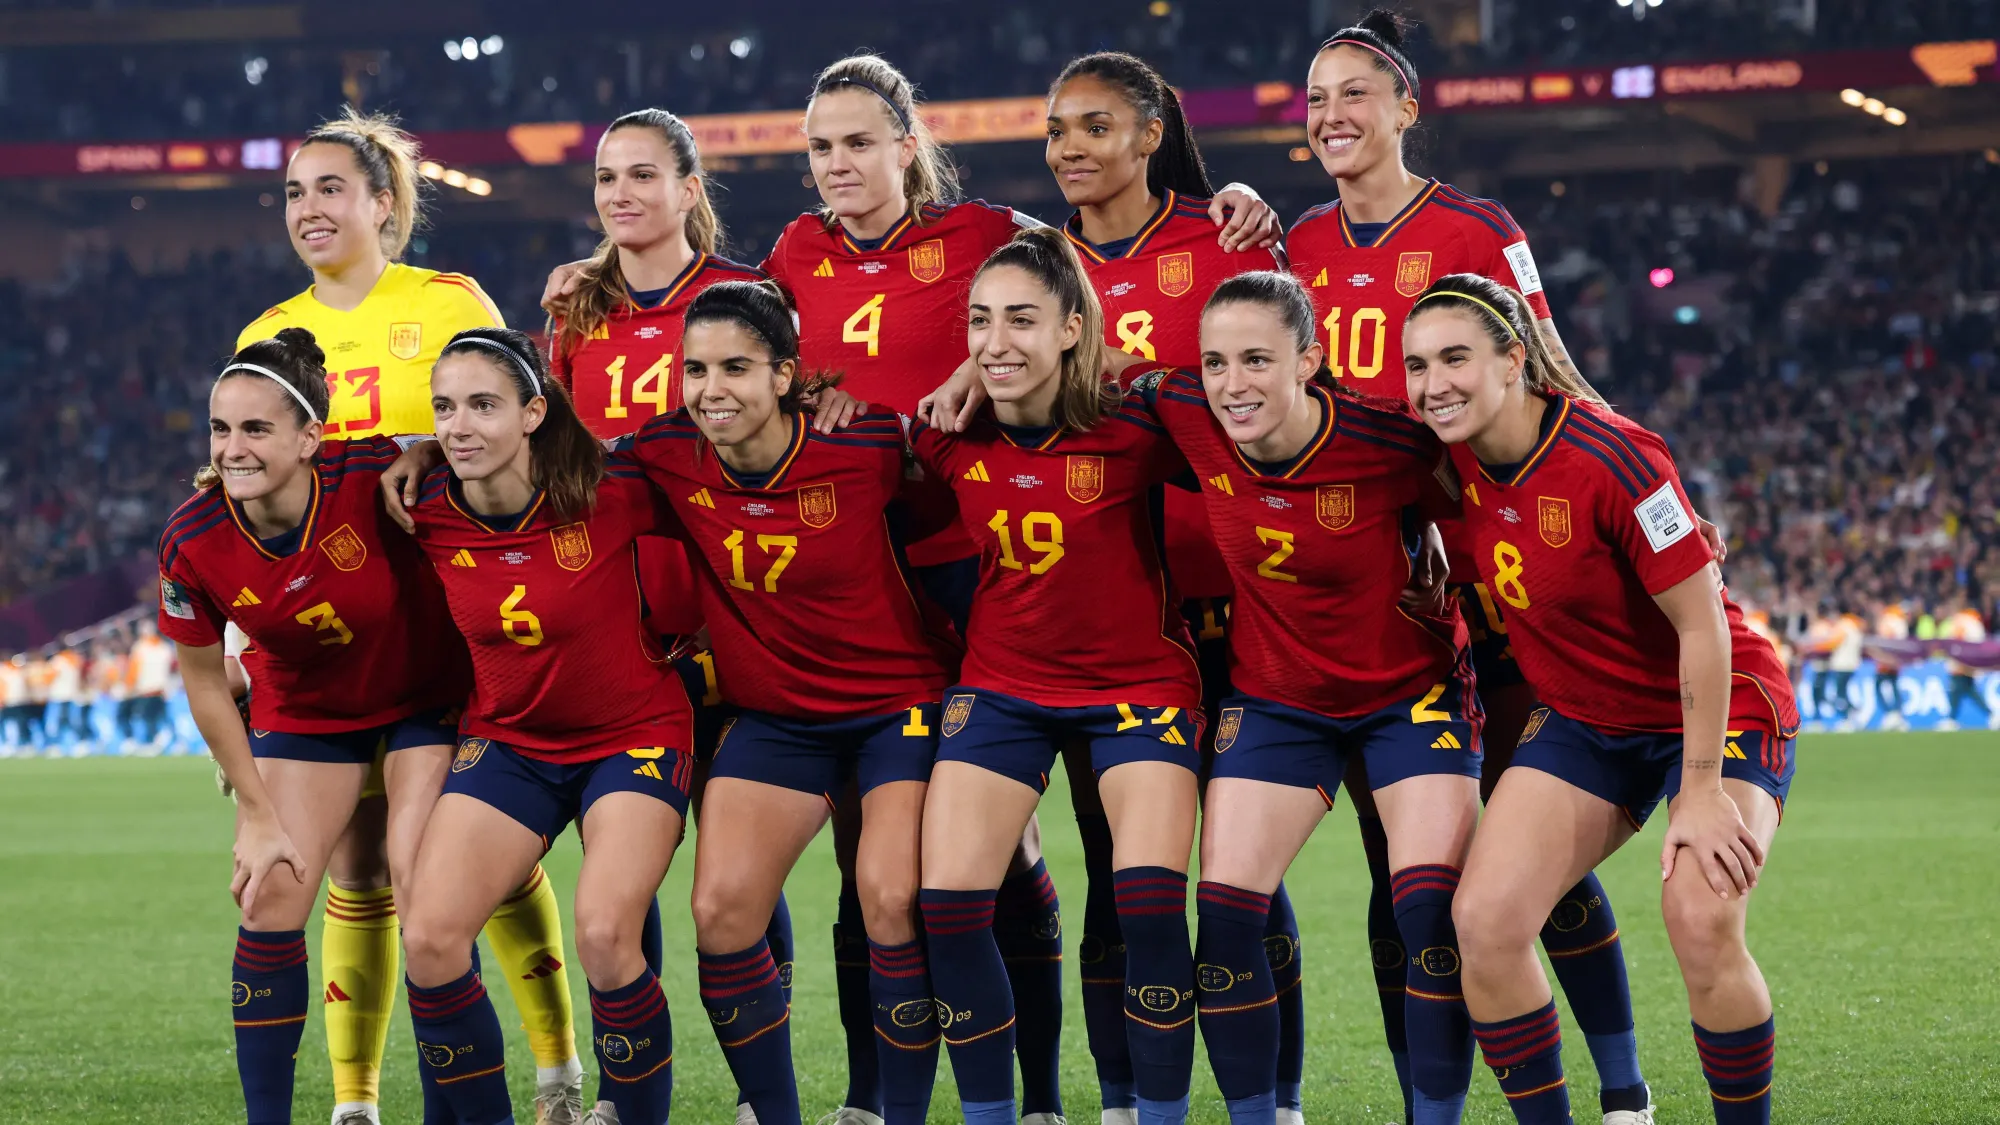 ทีมฟุตบอลหญิงของสเปนยืนหยัดต่อต้านพฤติกรรมที่ไม่เหมาะสม